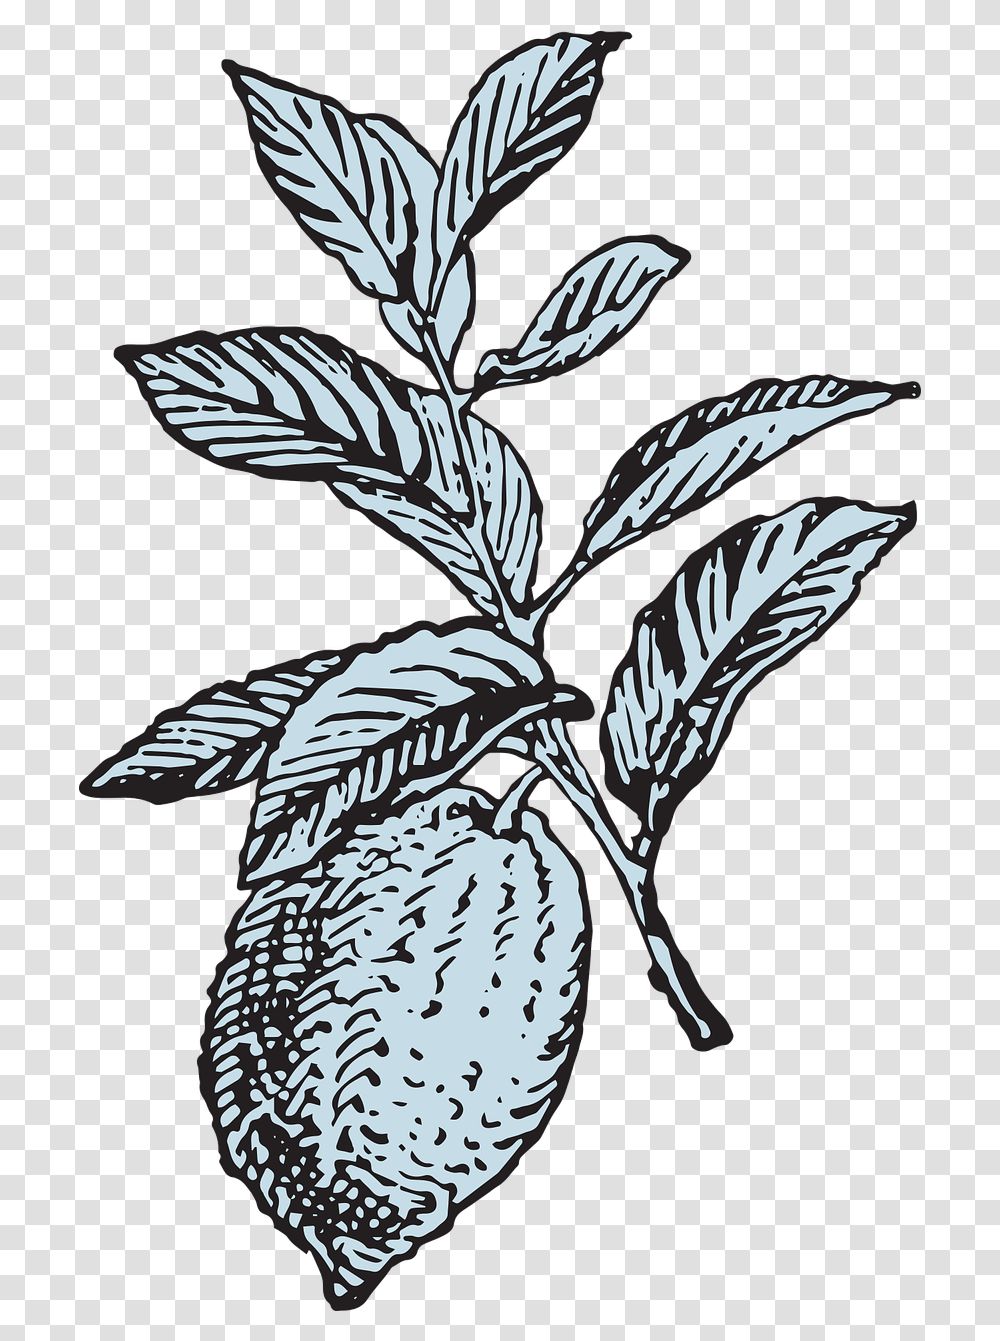 Lemon Tree Fruit Lemon Illustration Vintage, Bird, Animal, Plant, Leaf Transparent Png